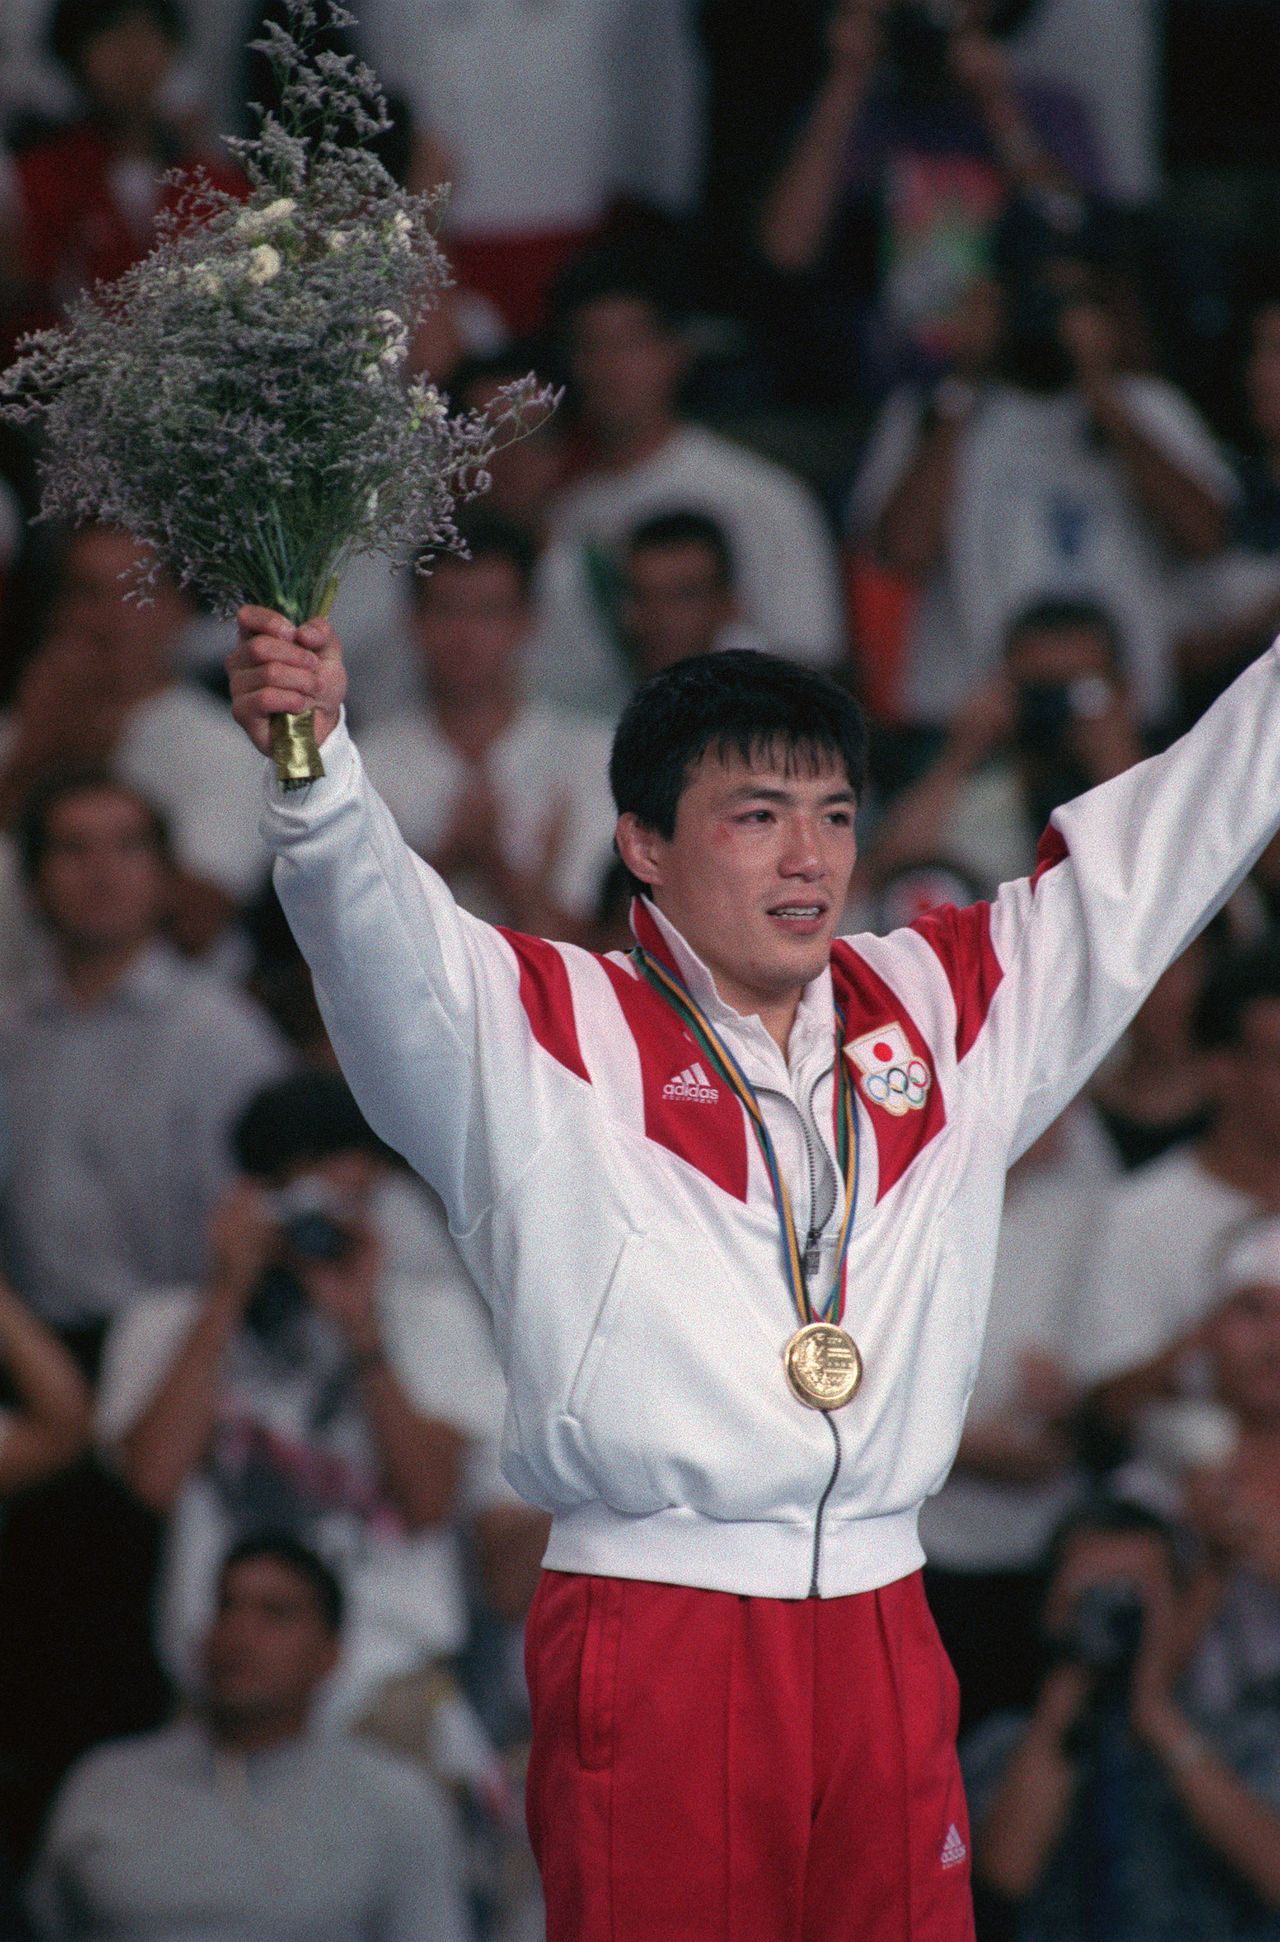 Koga Toshihiko en el podio el 31 de julio de 1992 después de ganar el oro en la competición masculina de judo de 71 kg en los Juegos Olímpicos de Barcelona. (© Jiji)